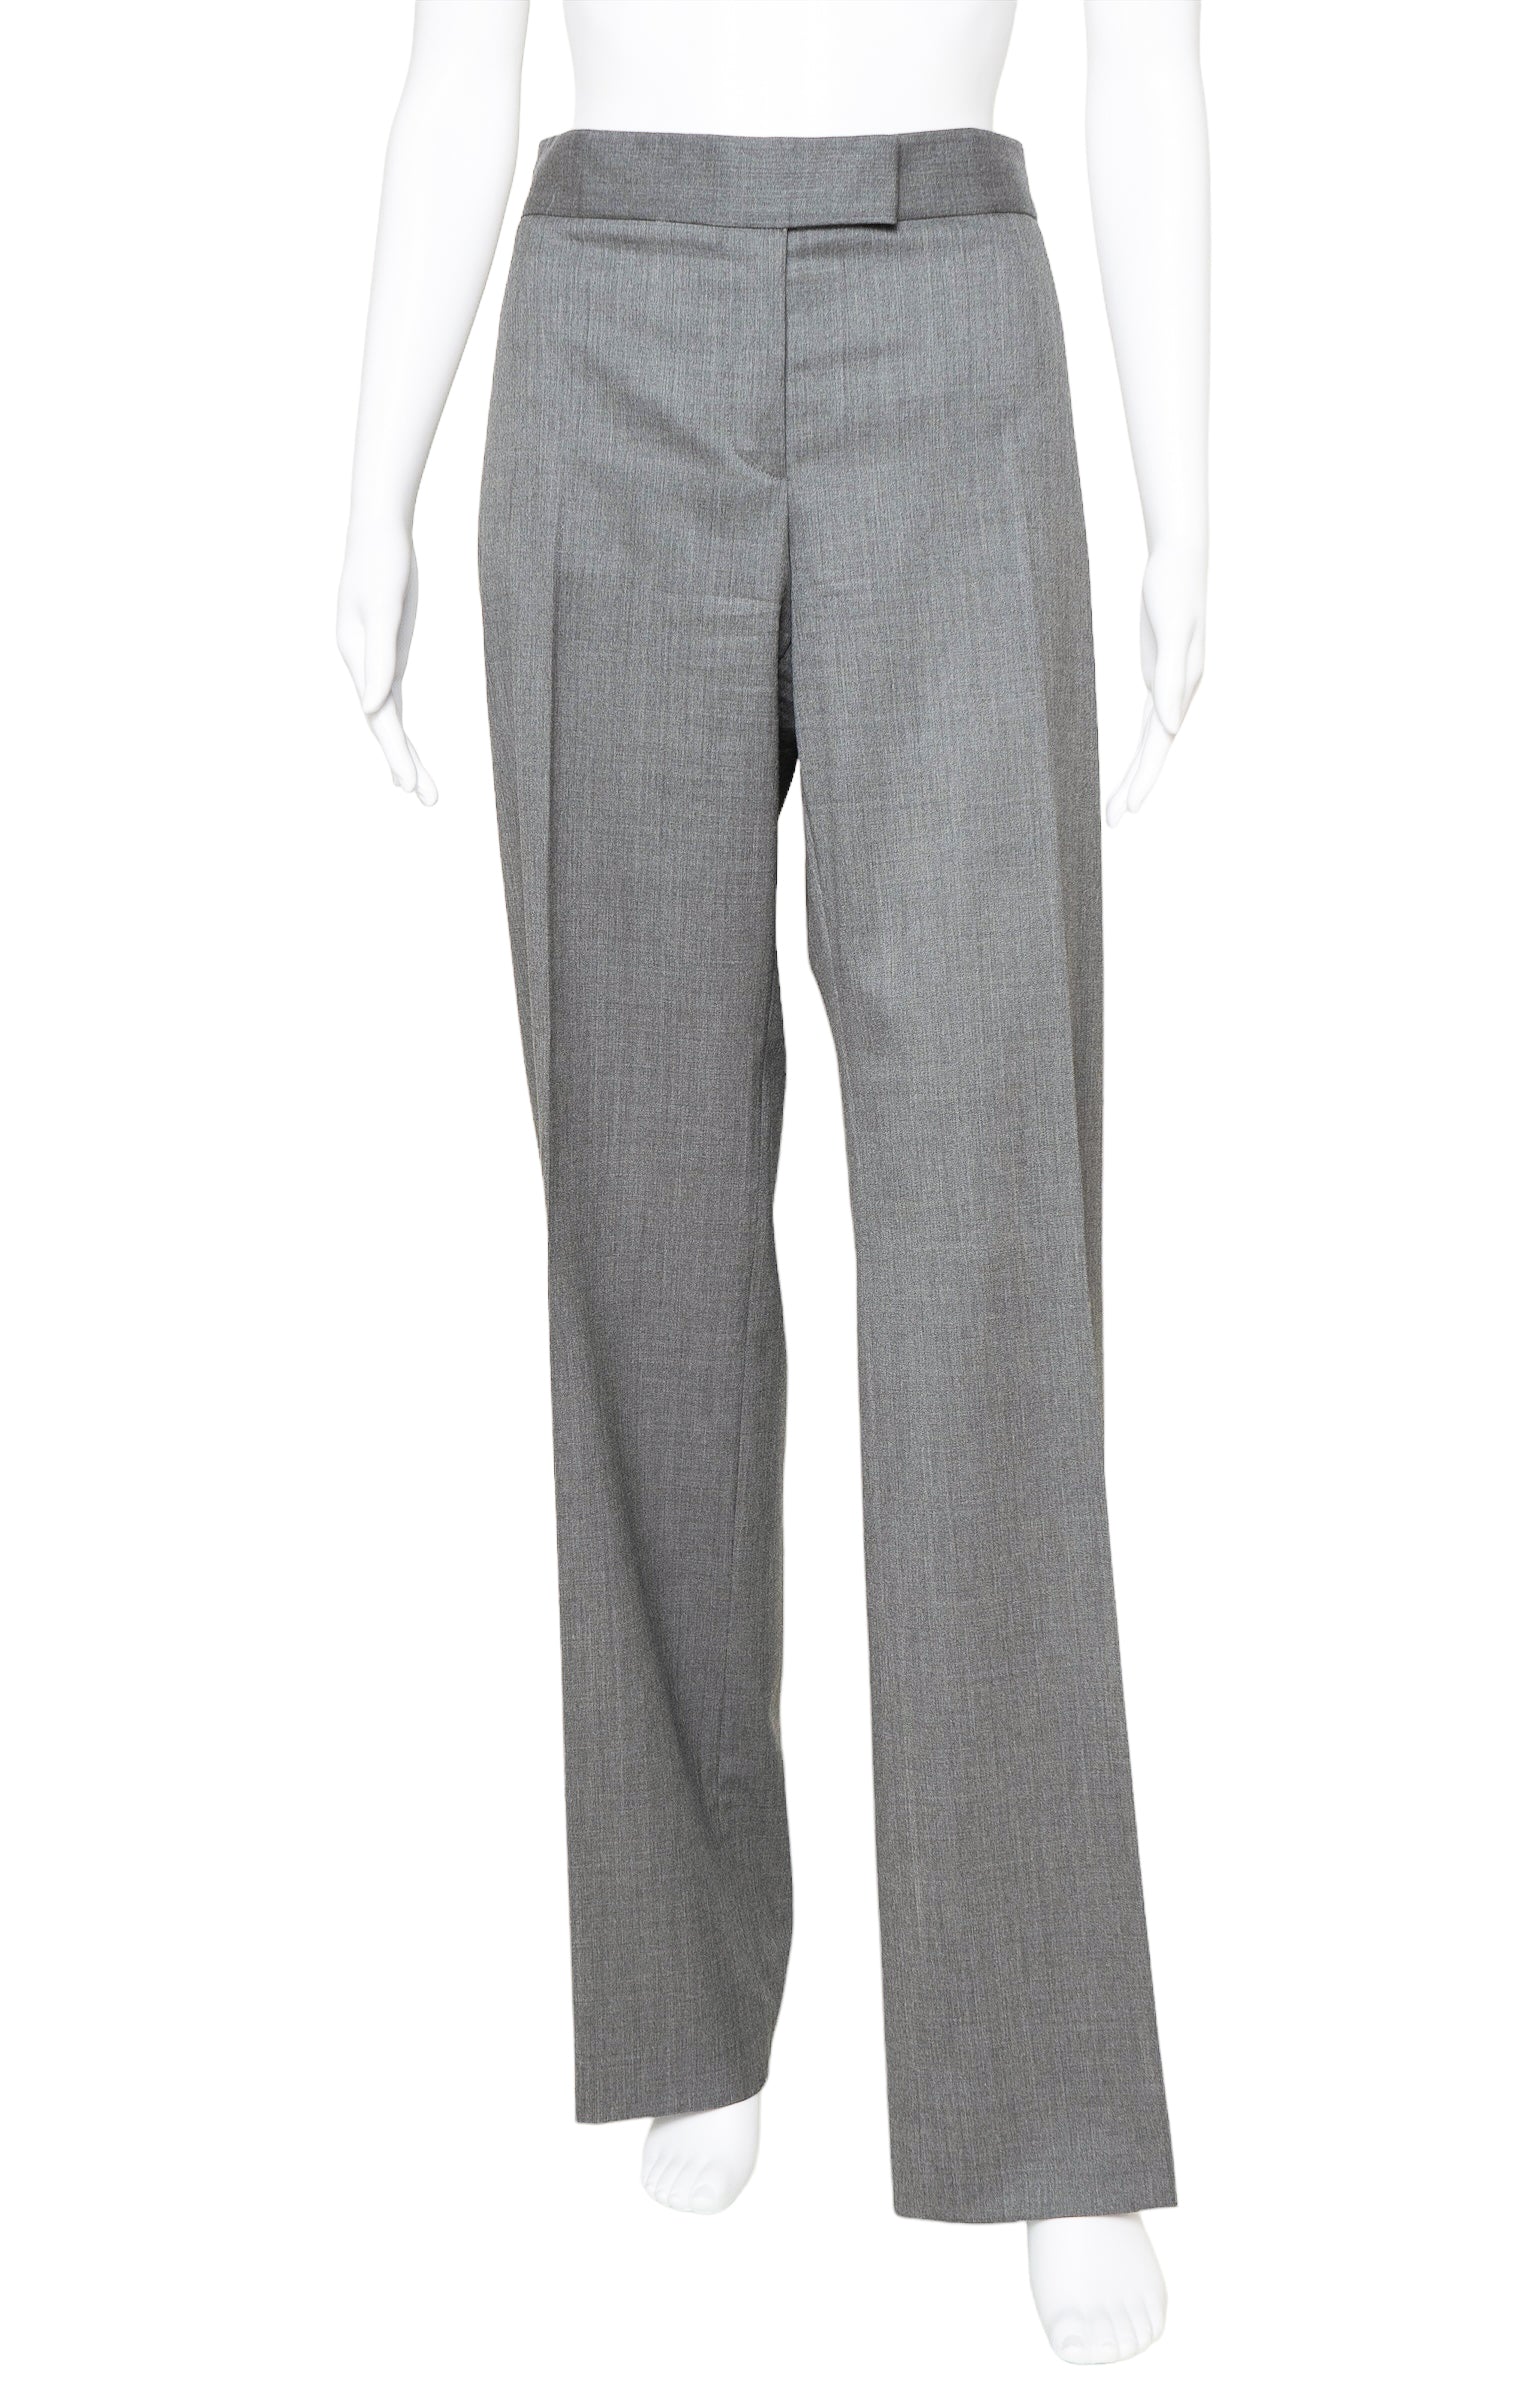 Women's Pant Suit Sewing Patterns Pdf Size 8-18 US,36-46 EU - Etsy Australia